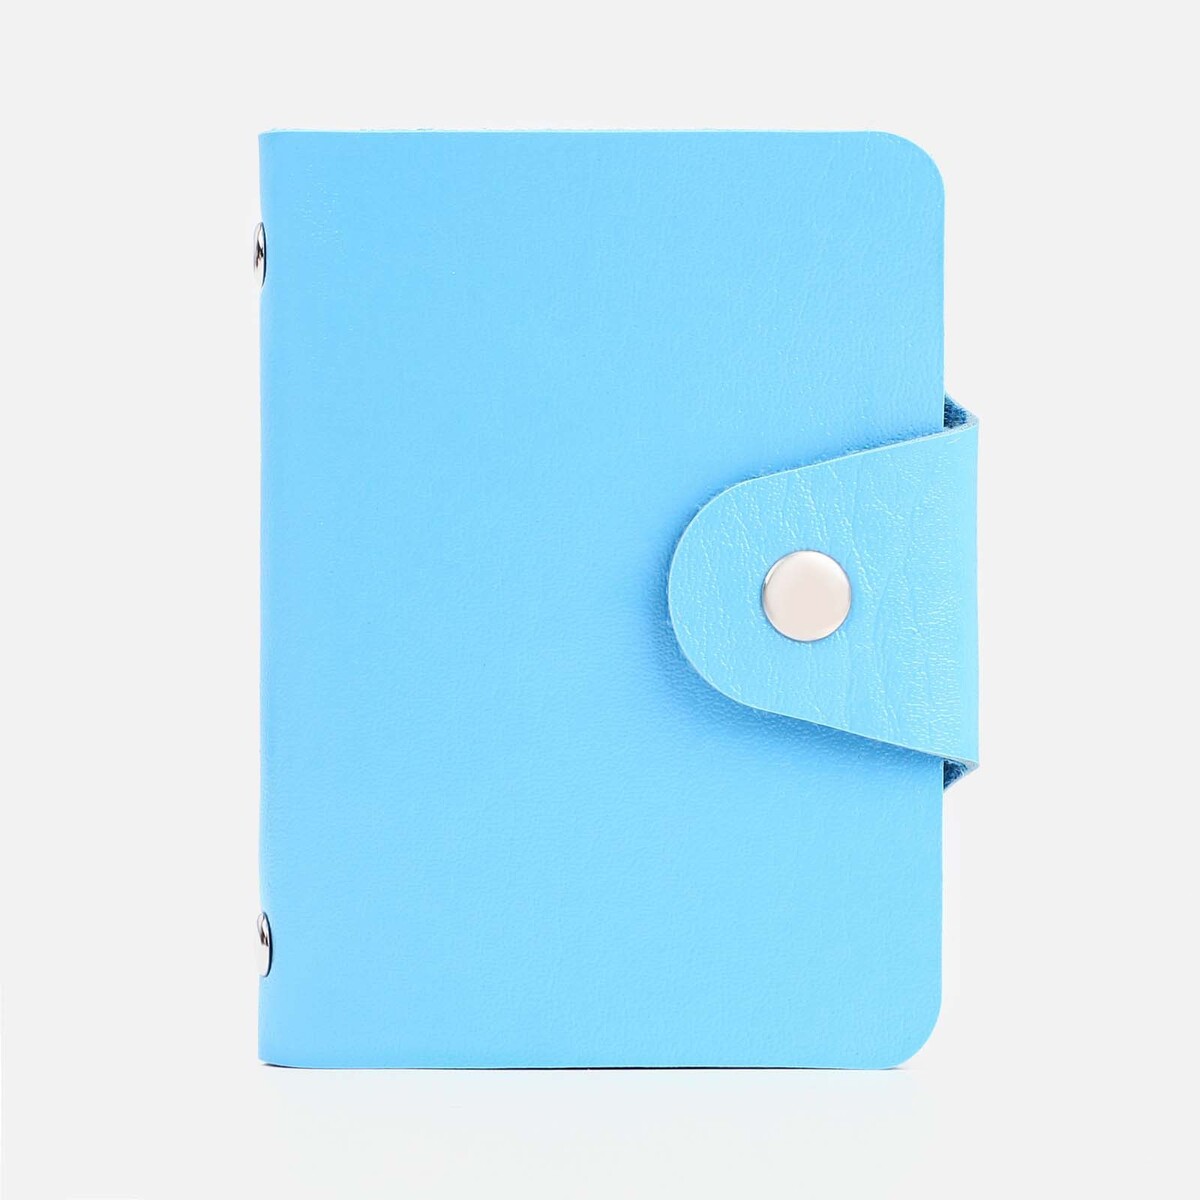 Визитница на кнопке, 12 карт, цвет голубой No brand